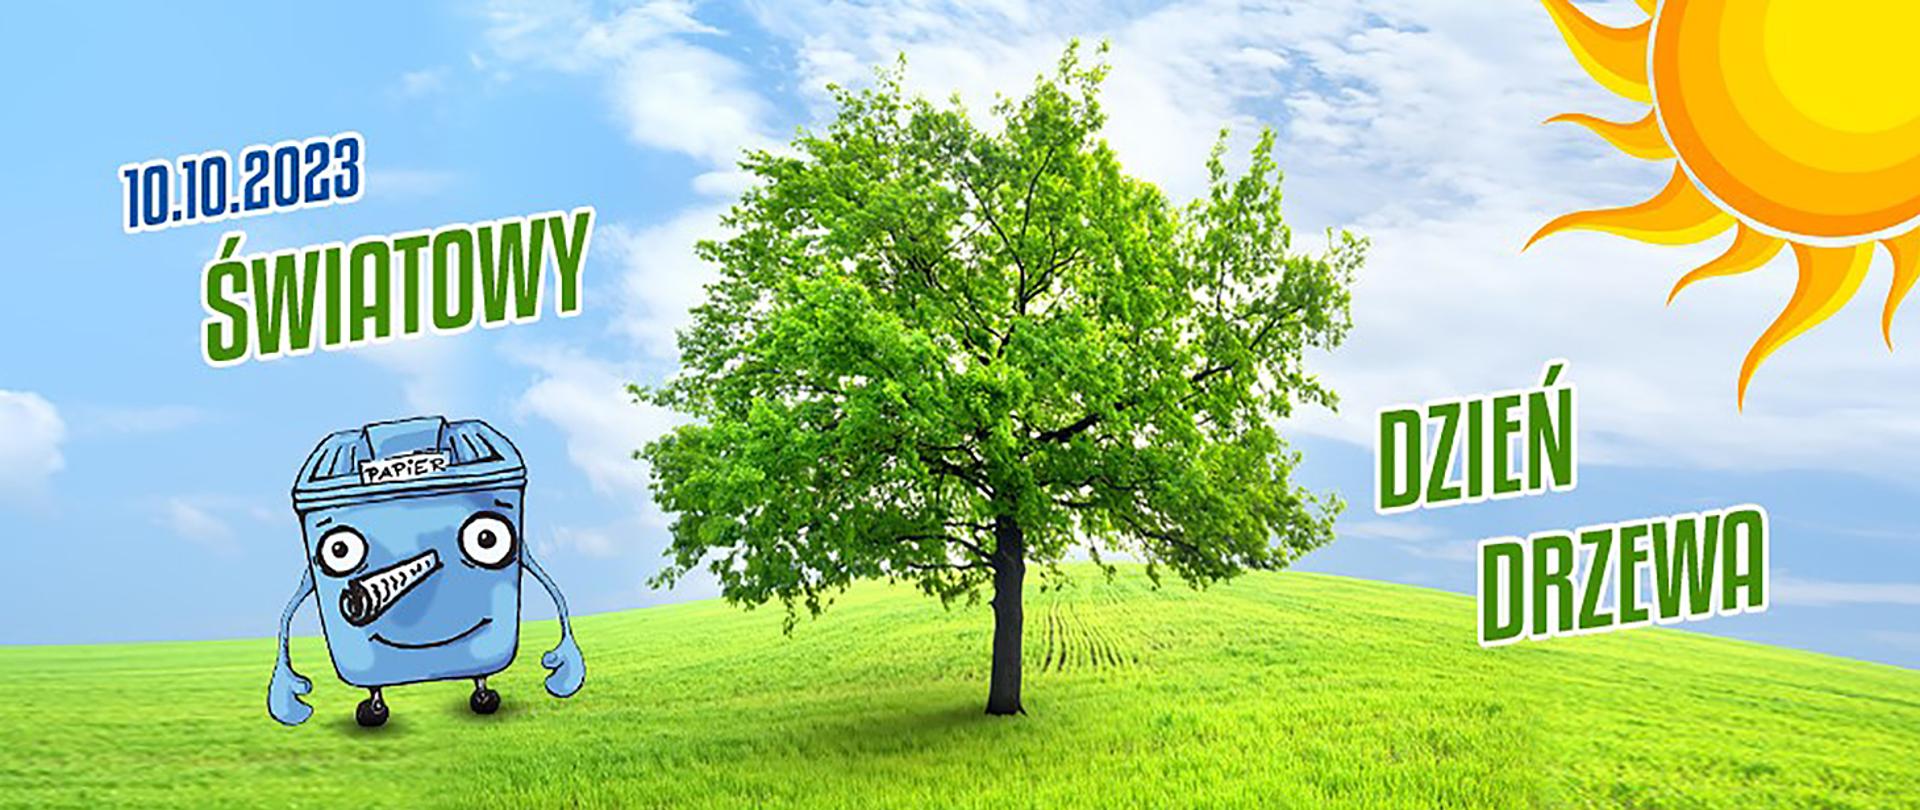 Napis Światowy dzień drzewa a w tle zielone drzewo na zielonej łące i słońce na niebieskim niebie 